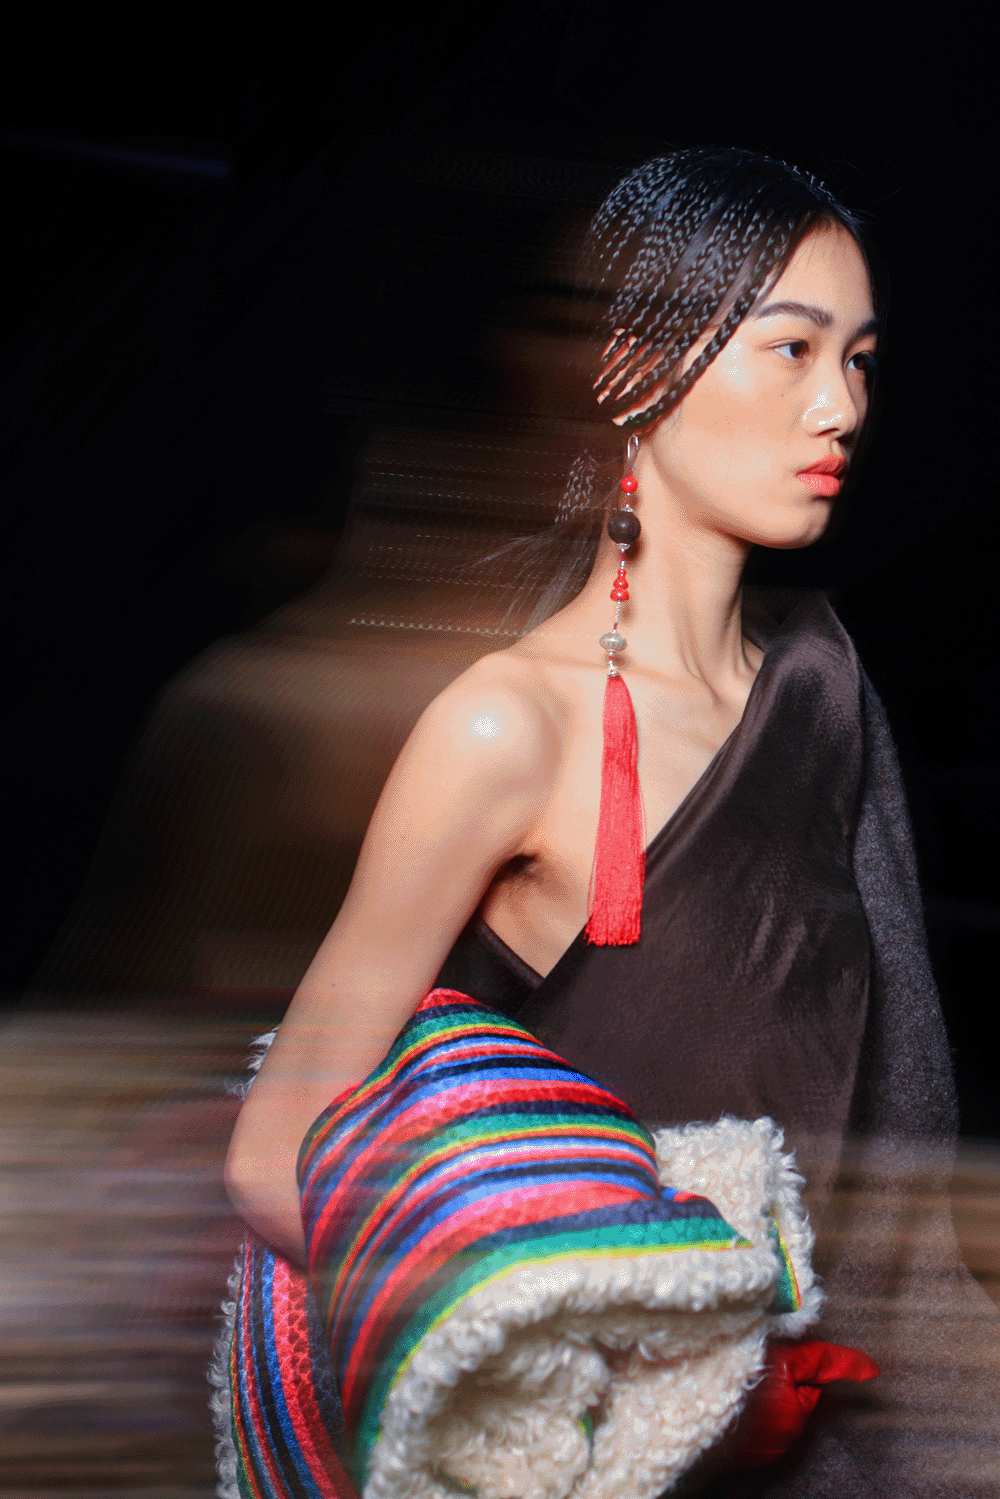 中国国际时装周上的非遗创新,如何以时尚面貌走进当代语境?